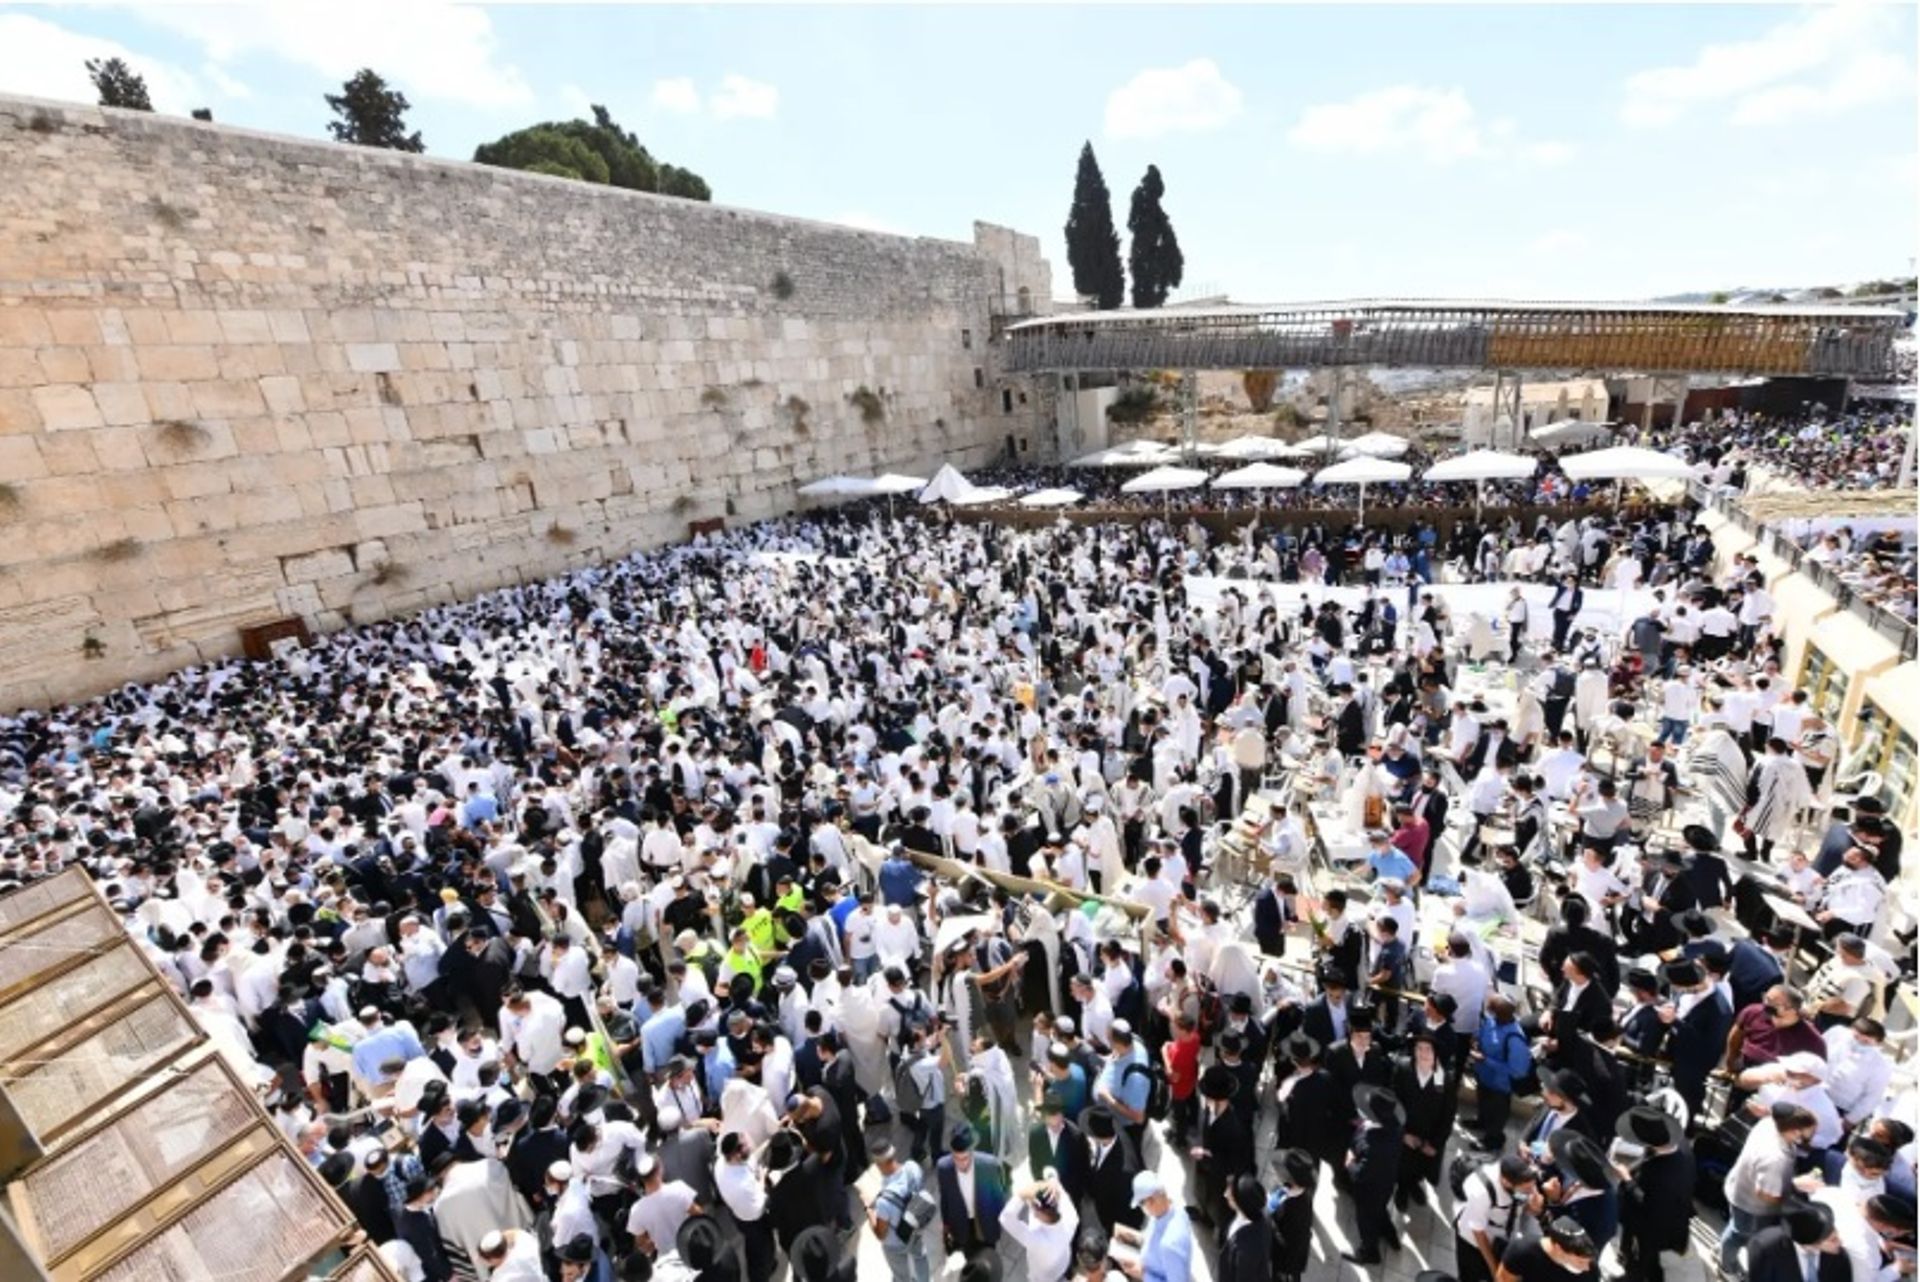 הכותל המערבי בירושלים נתון לתוכנית פיתוח שנויה במחלוקת

באדיבות הקרן למורשת הכותל